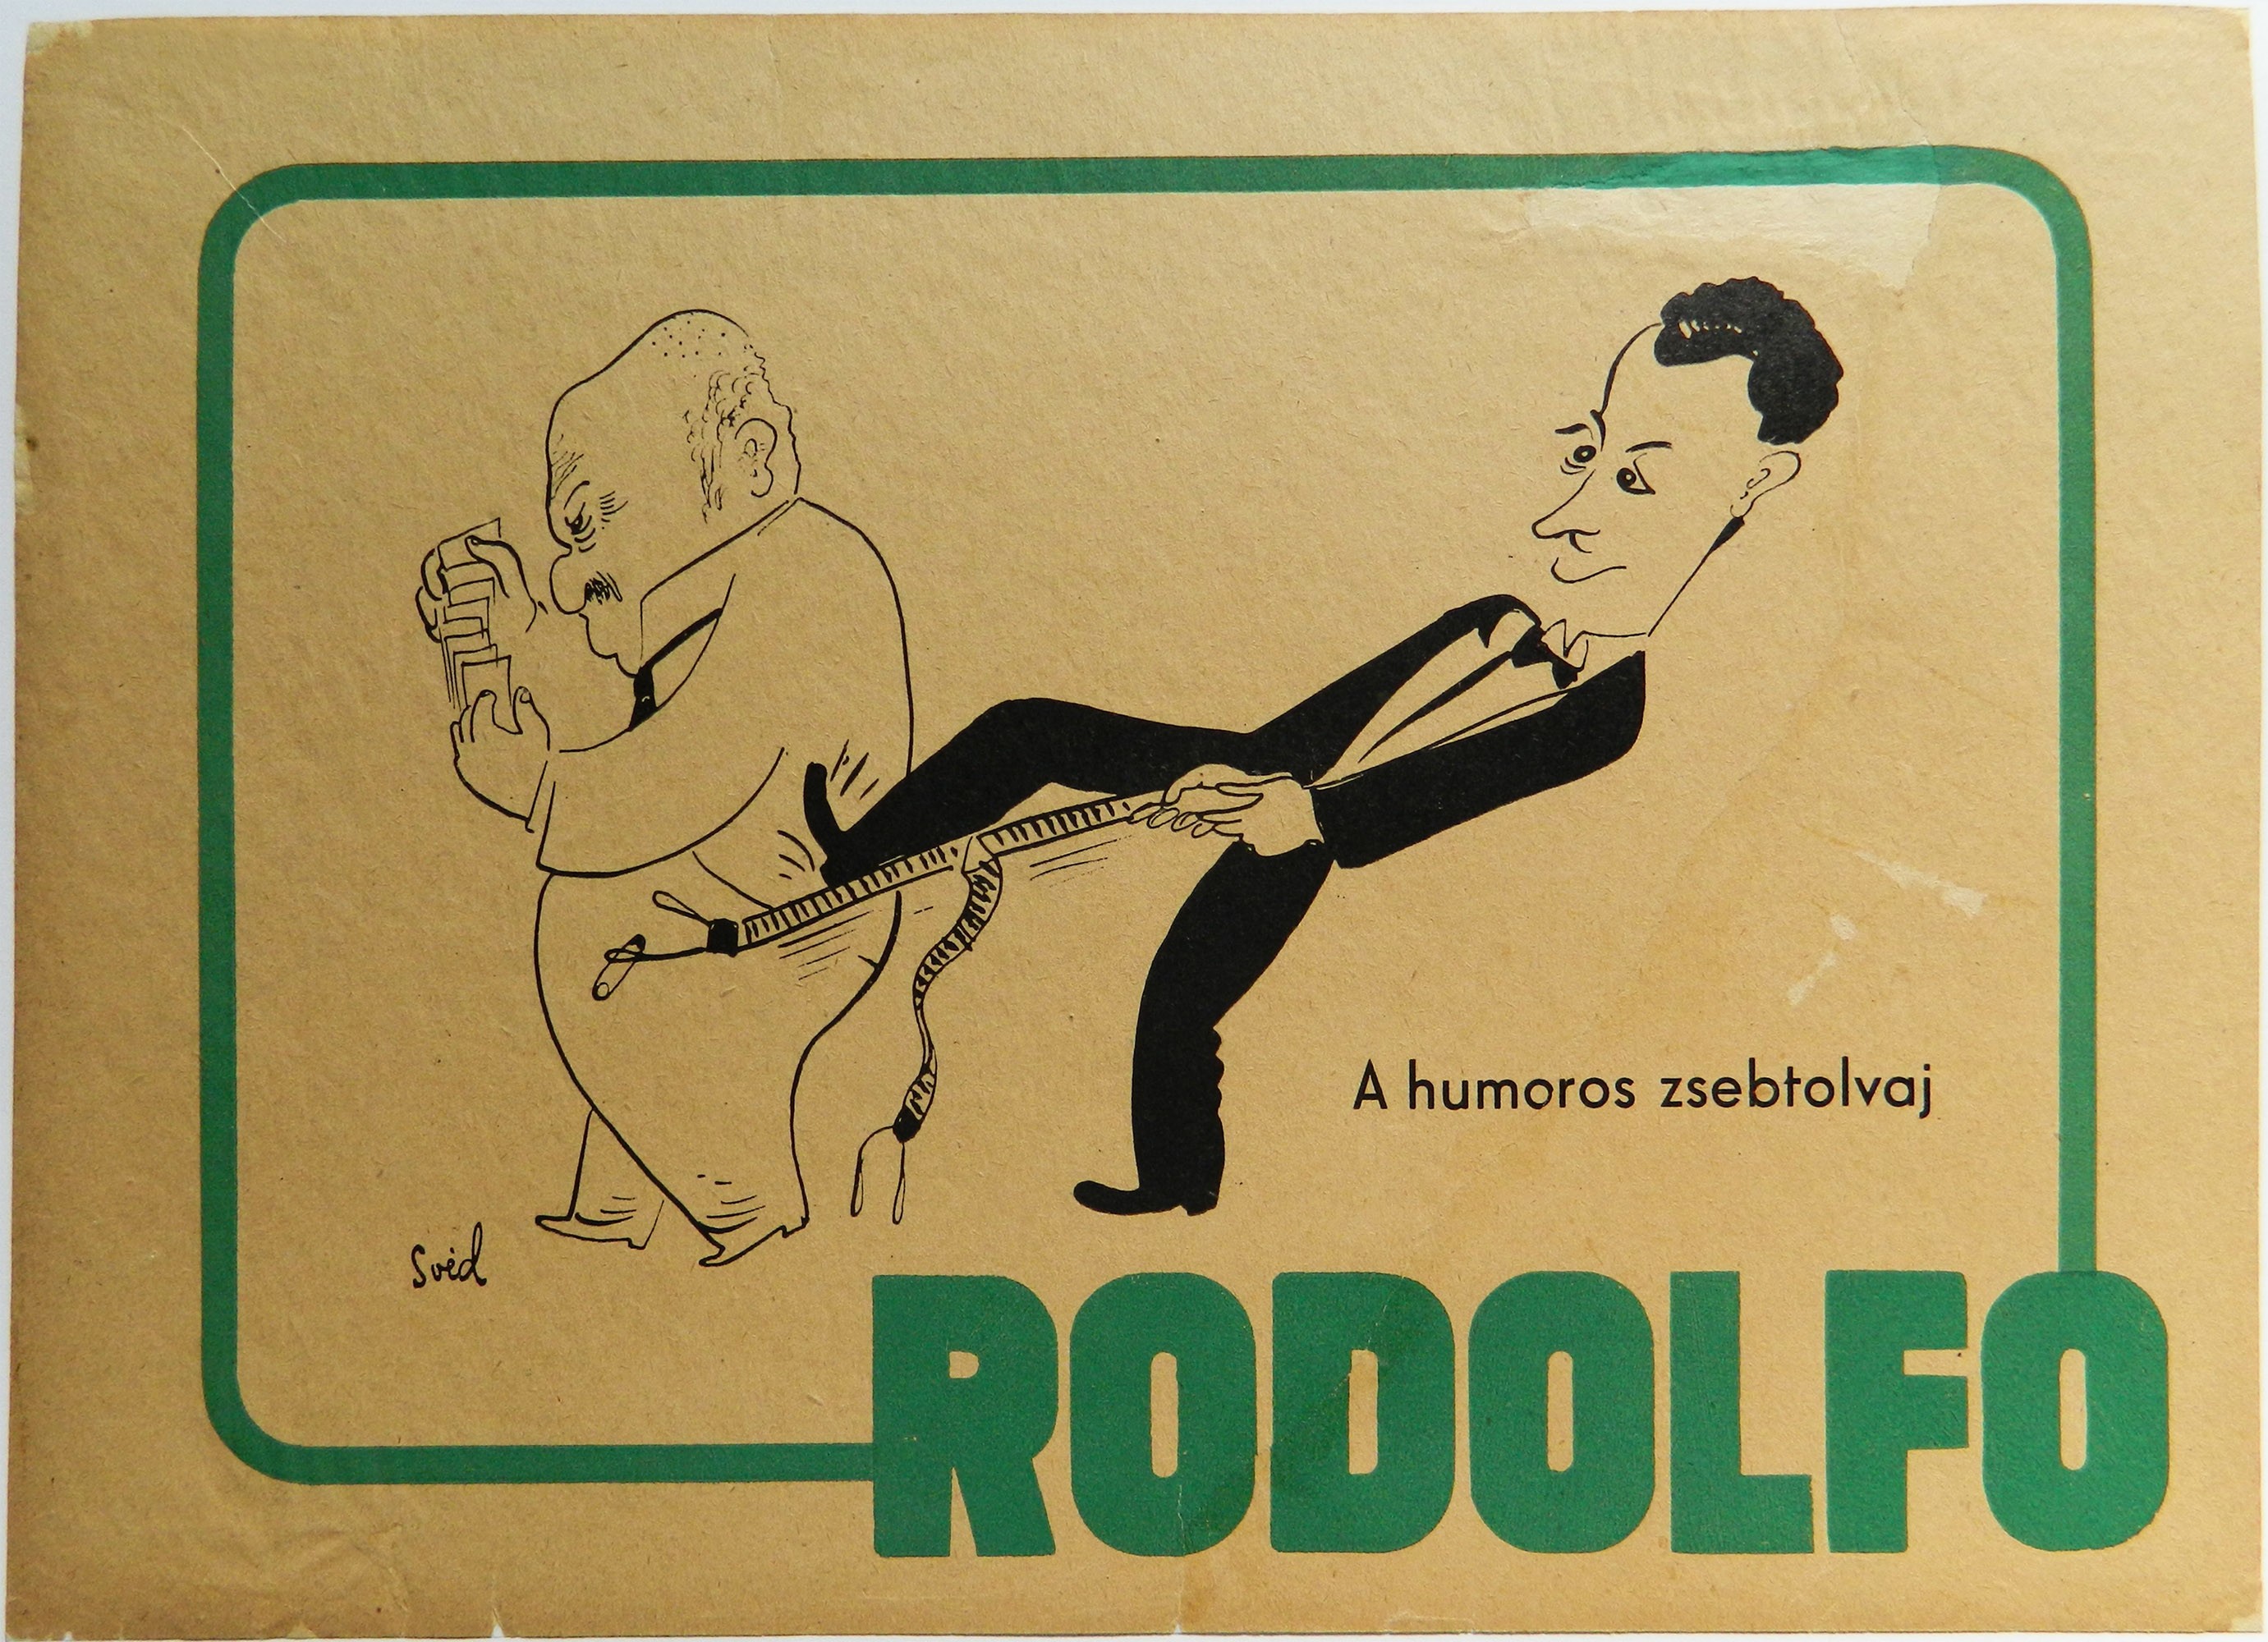 Rodolfo reklám szórólap (Kecskeméti Katona József Múzeum CC BY-NC-SA)